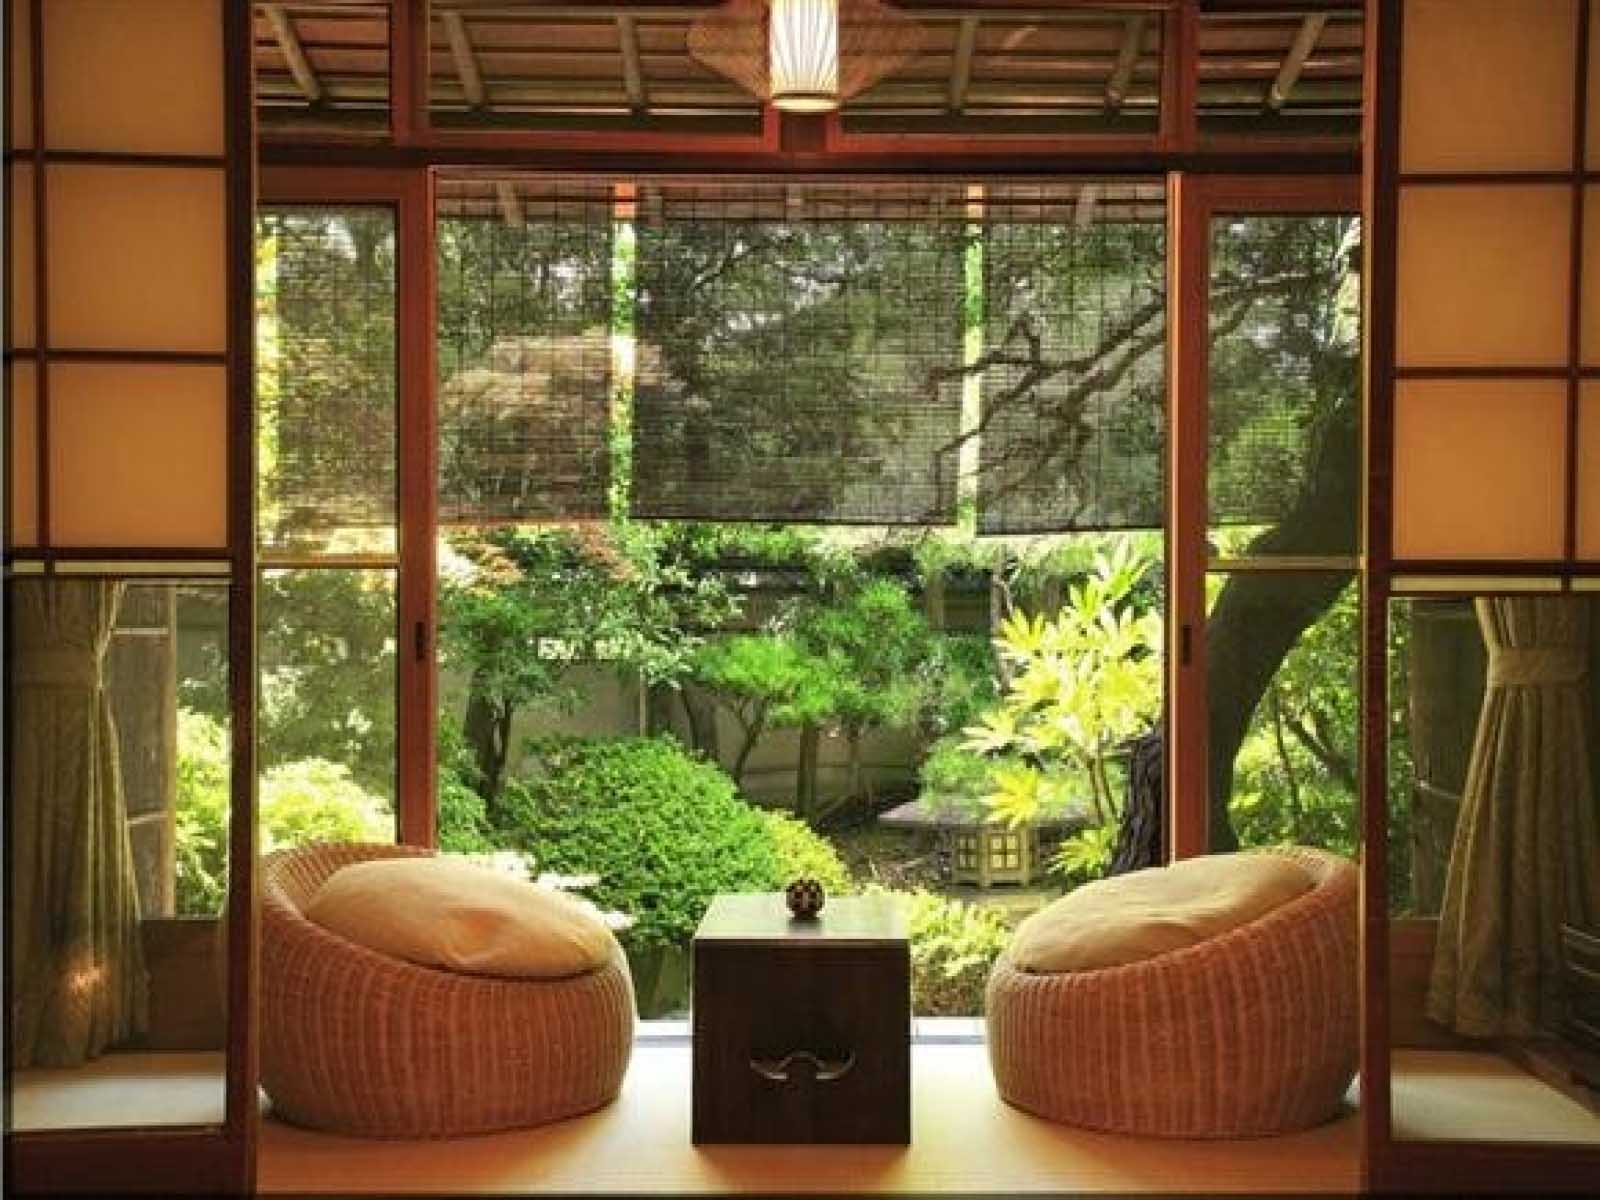 Nội thất Zen (Thiền) là phong cách nội thất bắt nguồn từ Nhật Bản